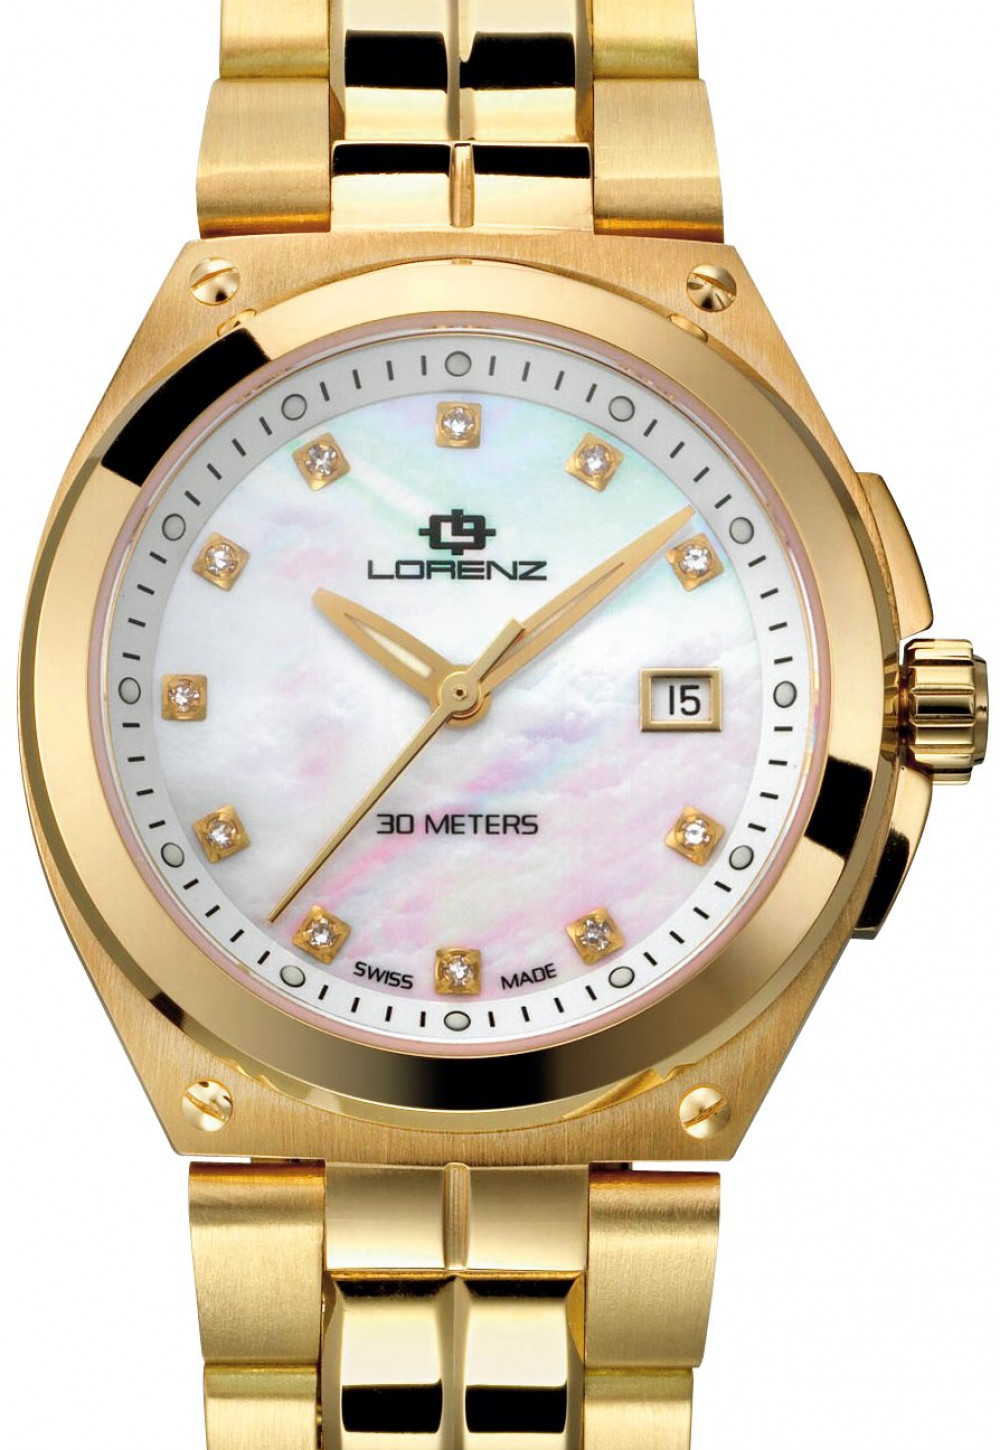 Zegarek firmy Lorenz, model Aquitania Gold Ladies